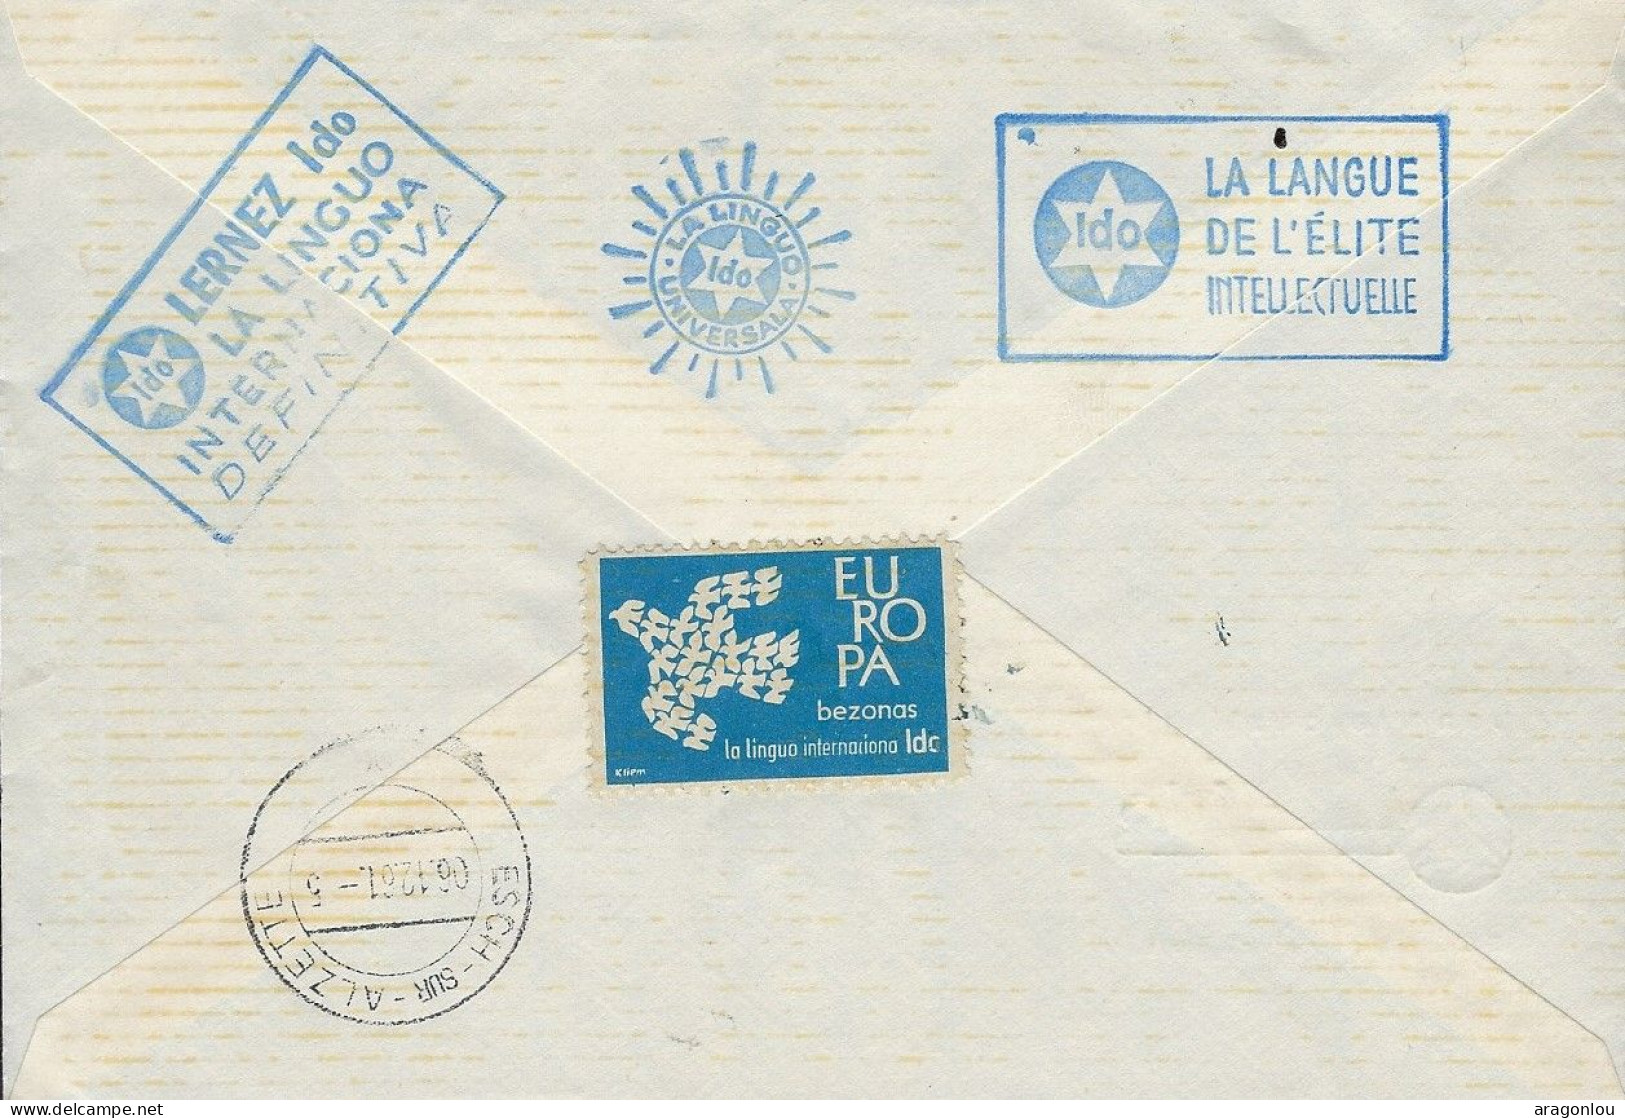 Luxembourg - Luxemburg - Lettre  Recommandé   FDC  1961  Caritas   Adressé à Madame Pauline Schmitz , Esch-Alzette - FDC